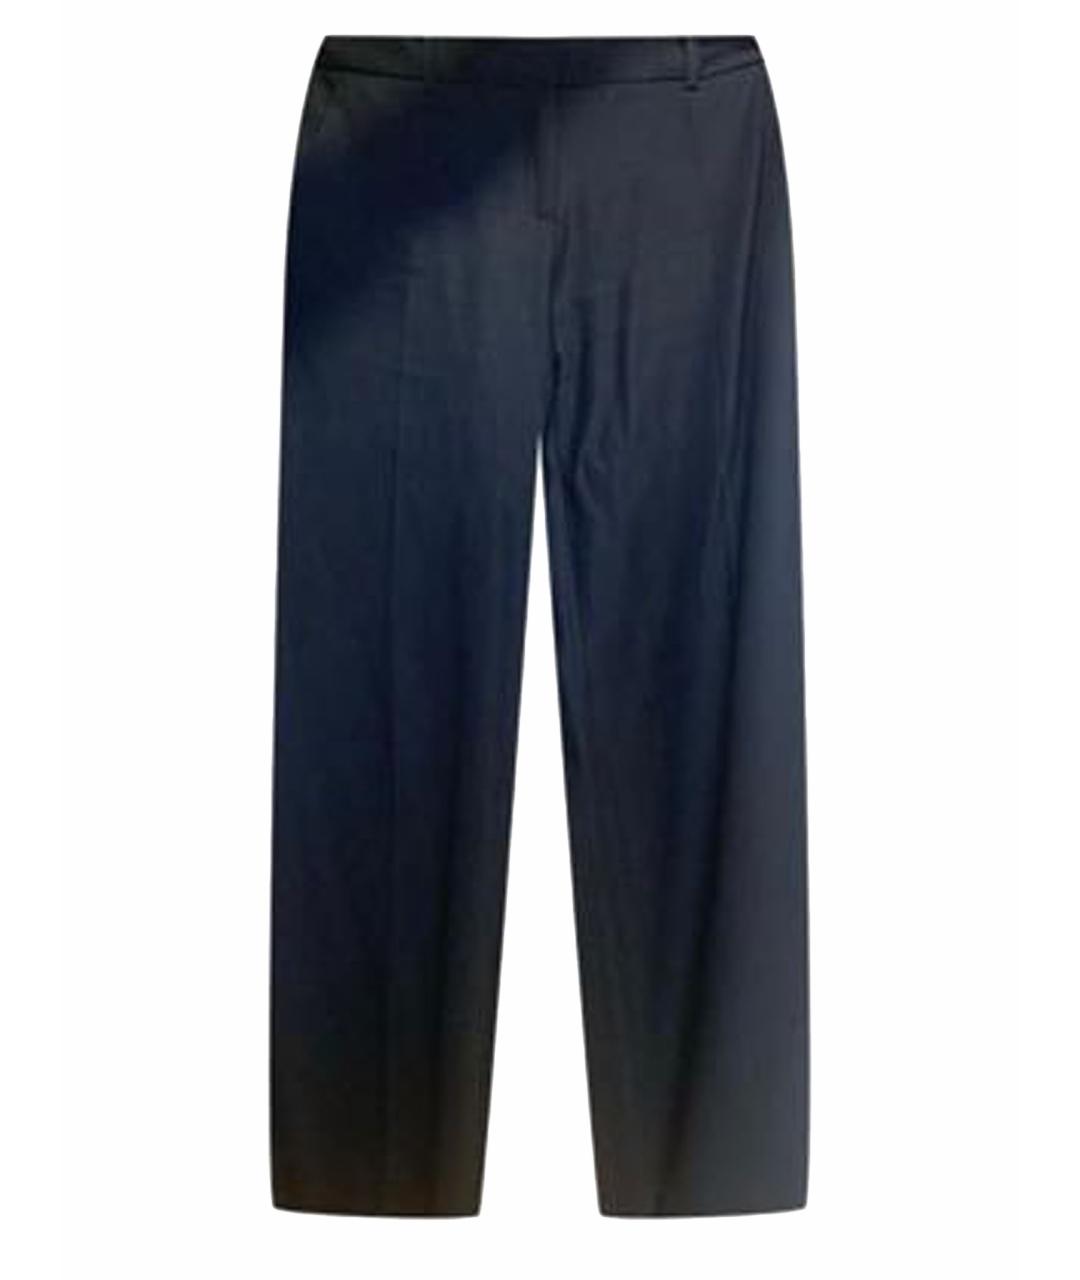 WEEKEND MAX MARA Темно-синие шерстяные брюки широкие, фото 1